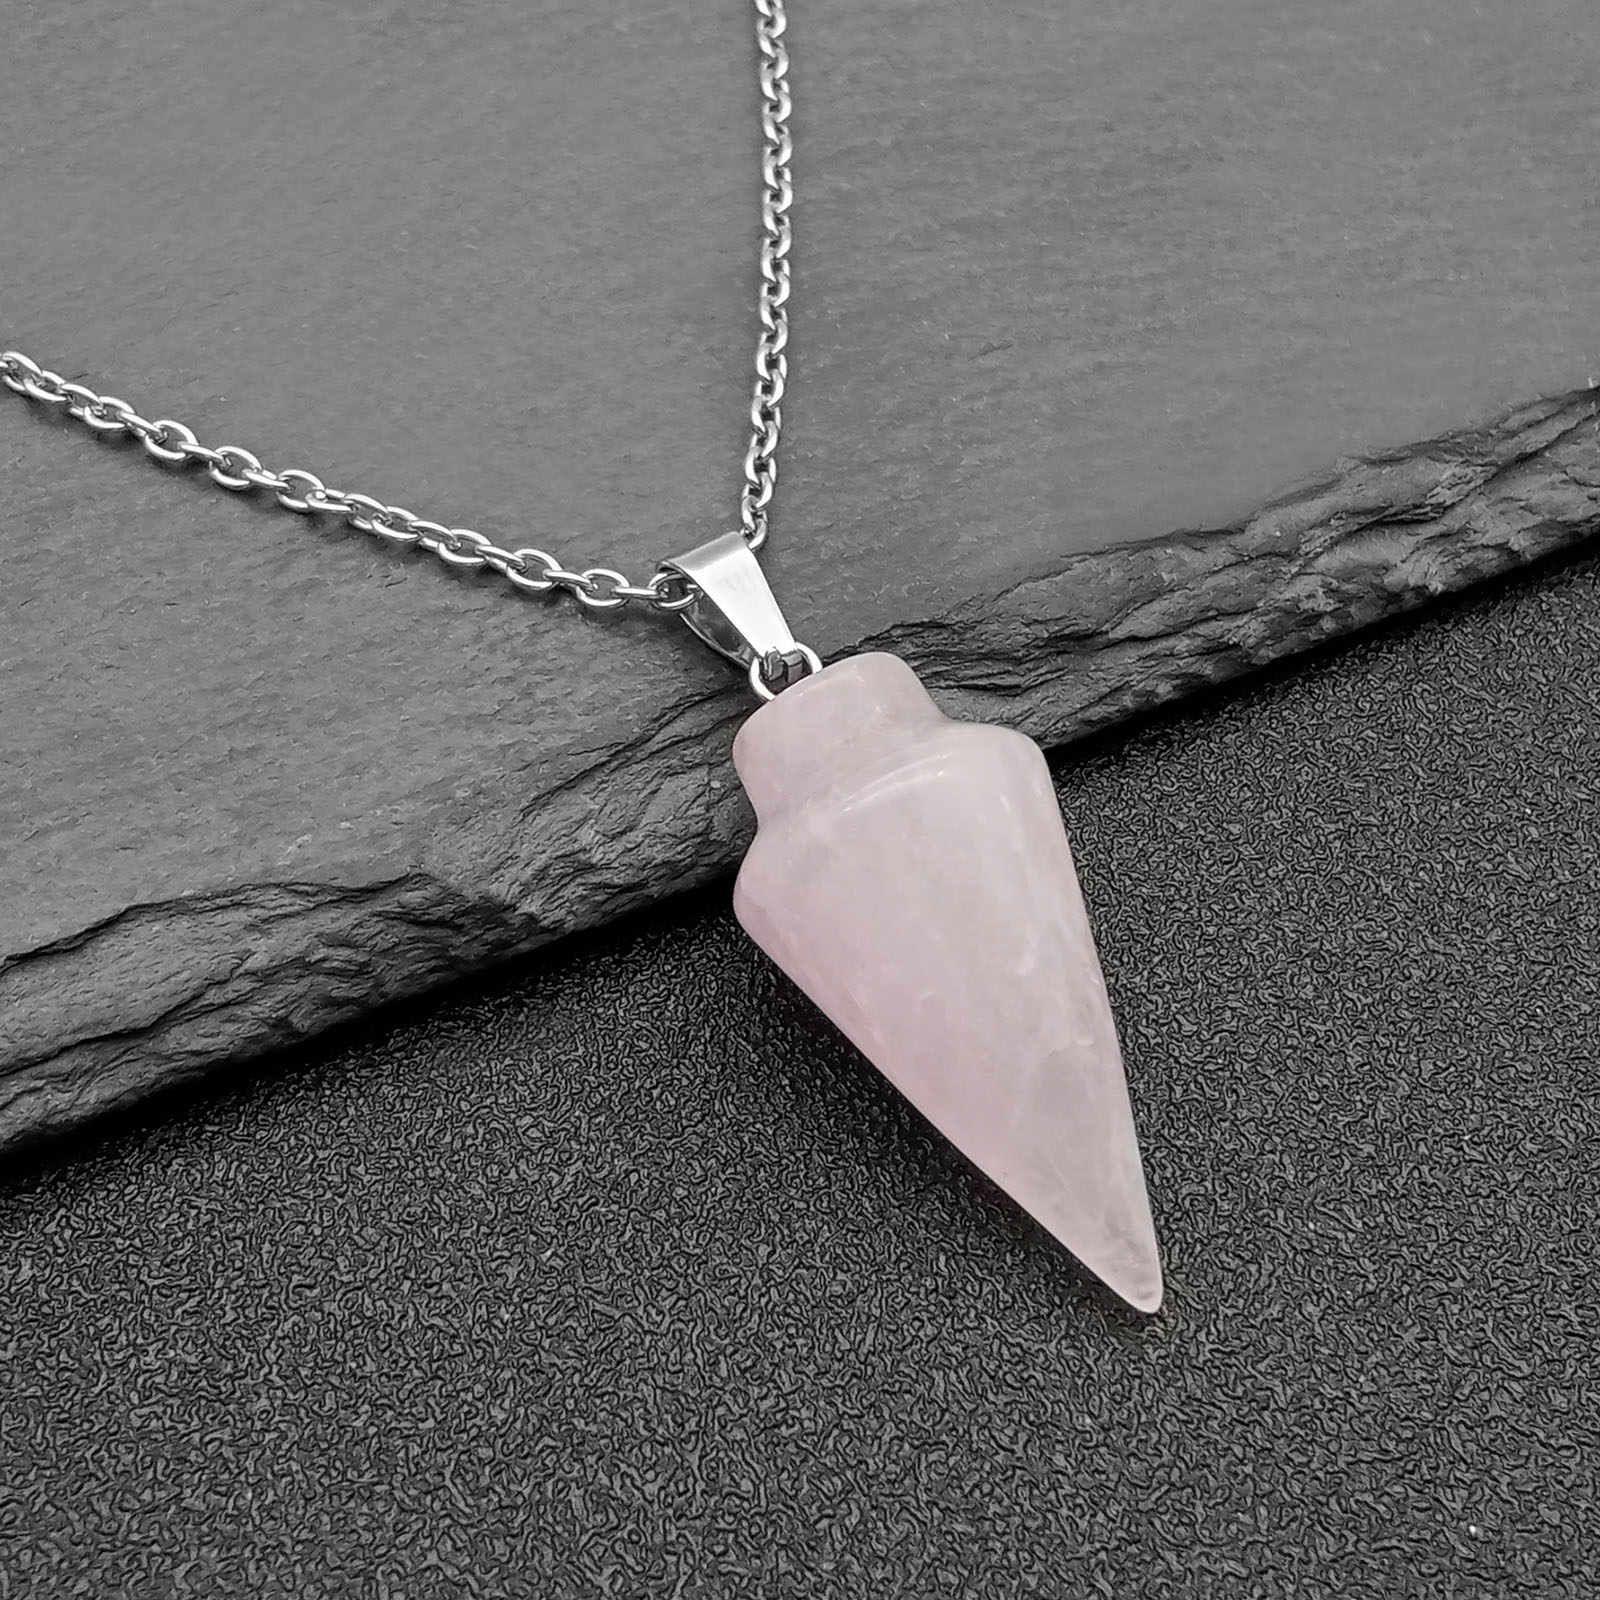 10:Pink crystal